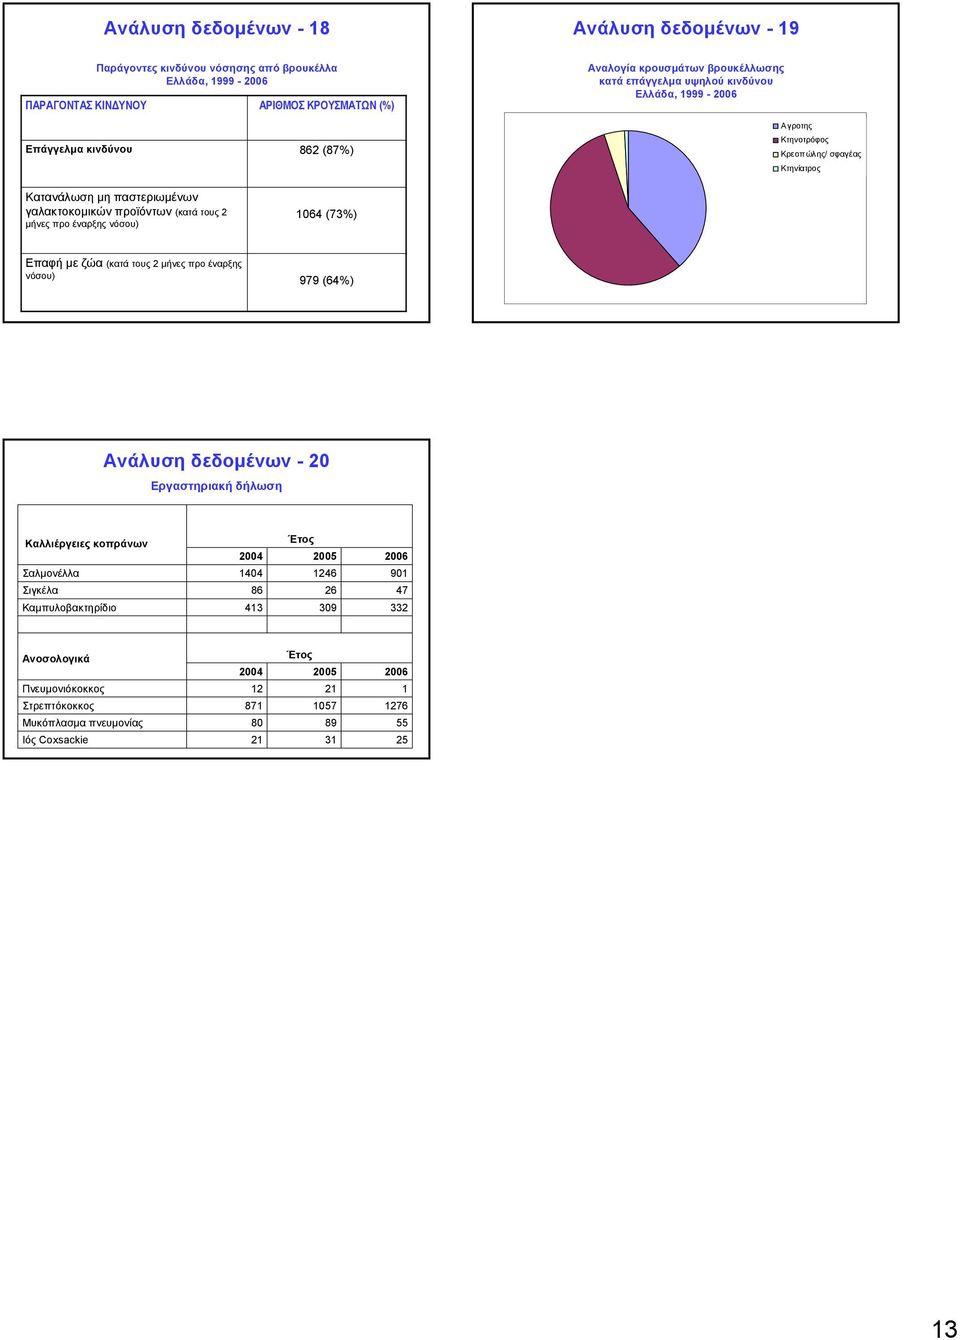 Κτηνοτρόφος Κρεοπ ώλης/ σφαγέας Κτηνίατρος Επαφή με ζώα (κατά τους 2 μήνες προ έναρξης νόσου) 979 (6%) Ανάλυση δεδομένων -20 Εργαστηριακή δήλωση Καλλιέργειες κοπράνων Σαλμονέλλα